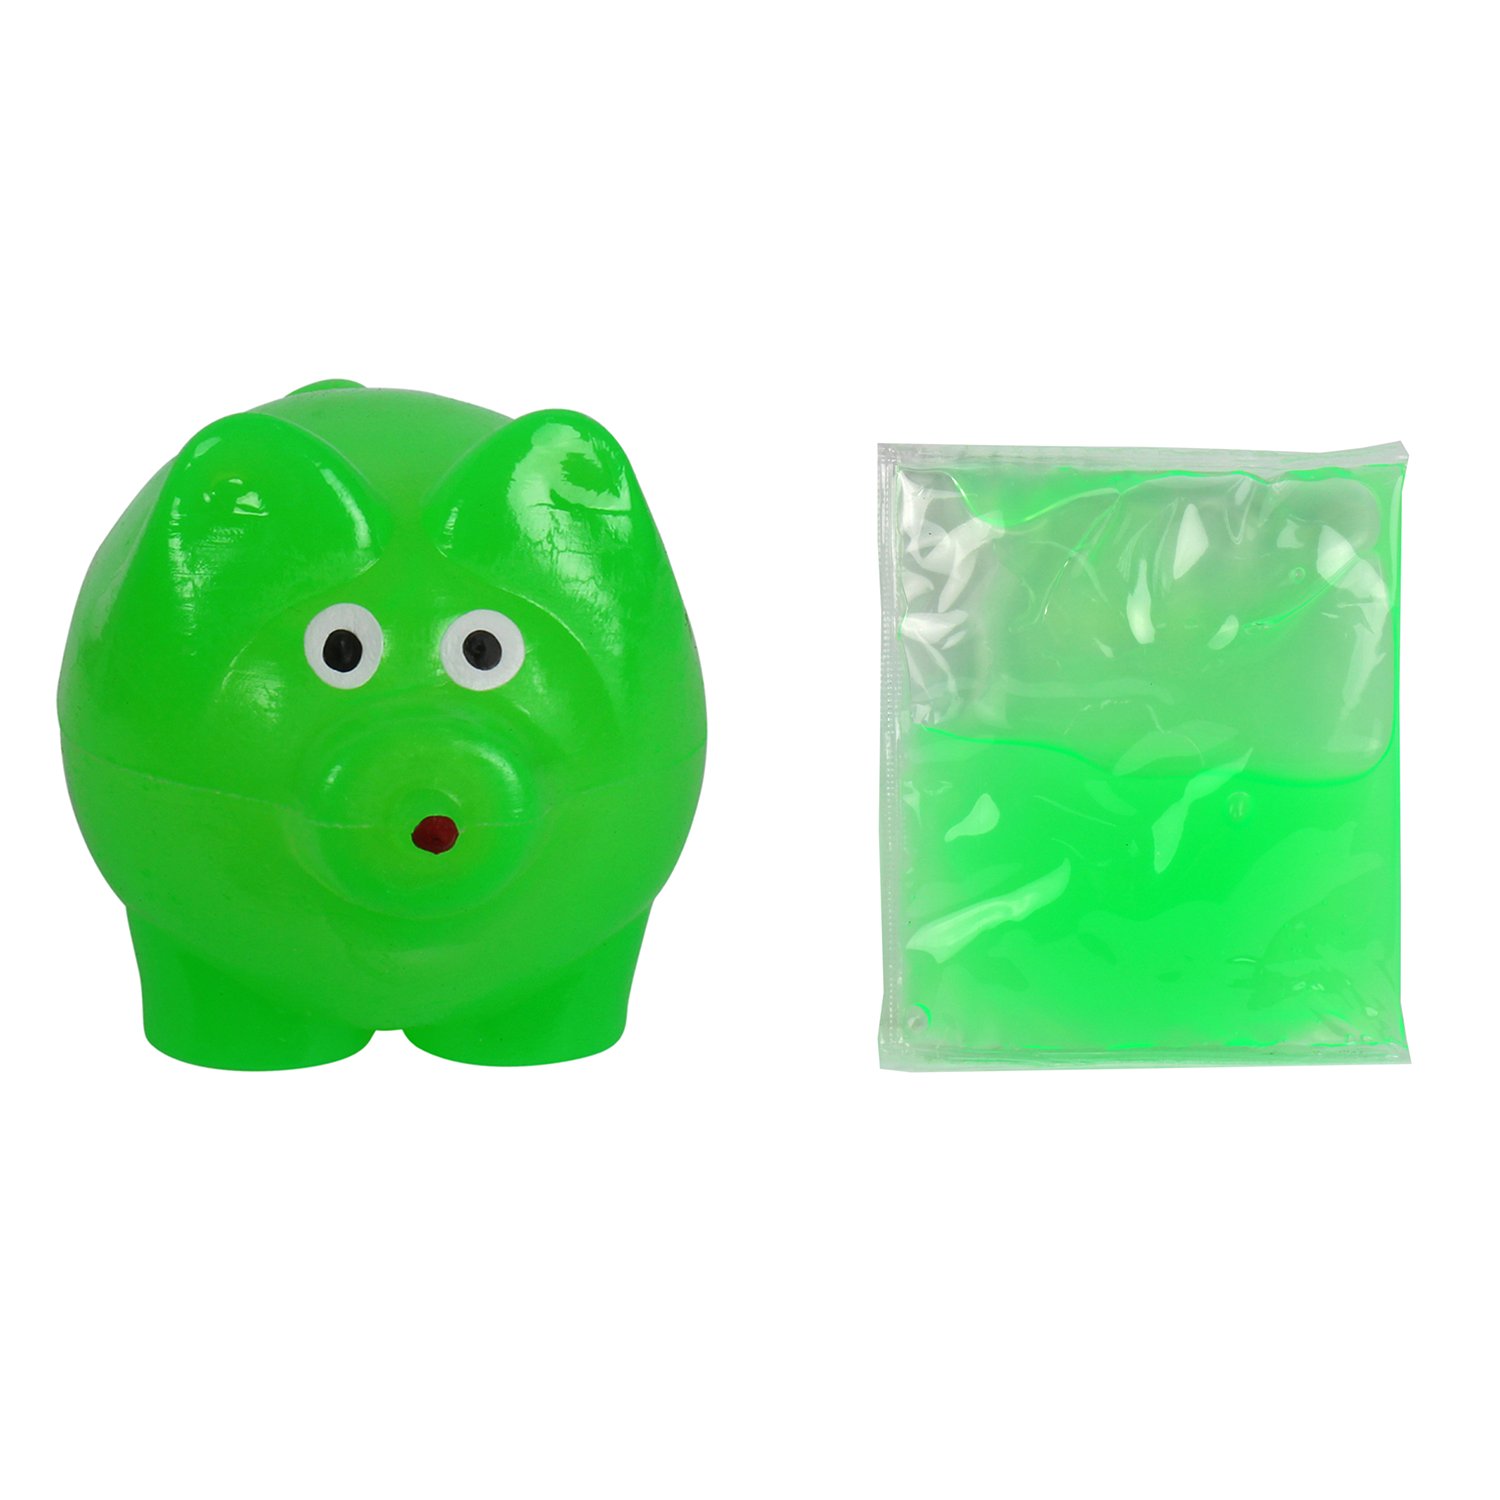 Игрушка слизь. ЛИЗУН 1 Toy т59115 зеленый. Игрушка 1toy мелкие пакости свинота со слизью. ЛИЗУН 1 Toy т59113 черный. СЛИЗЕНЬ антистресс игрушка.